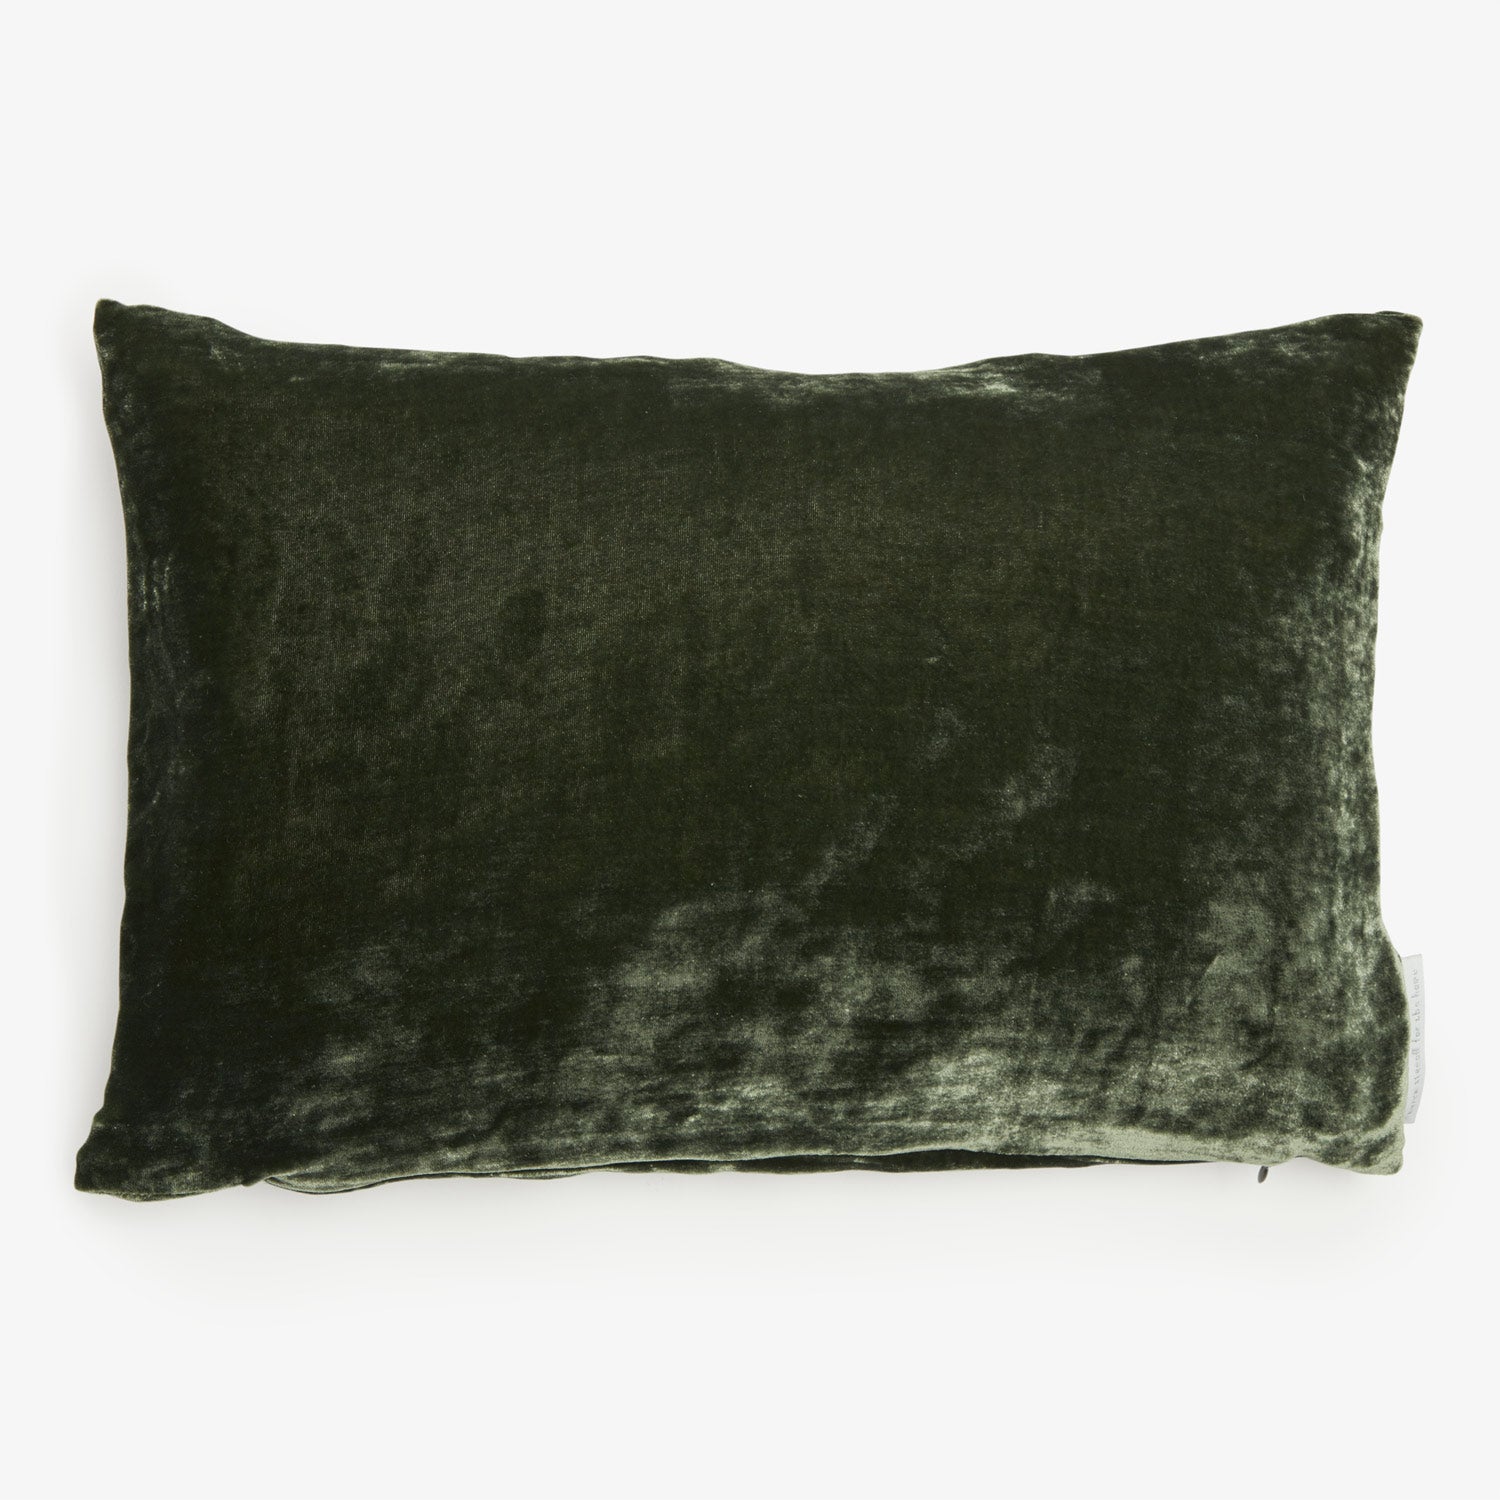 Rectangular dark green velvet pillow with a plush, luxurious texture.